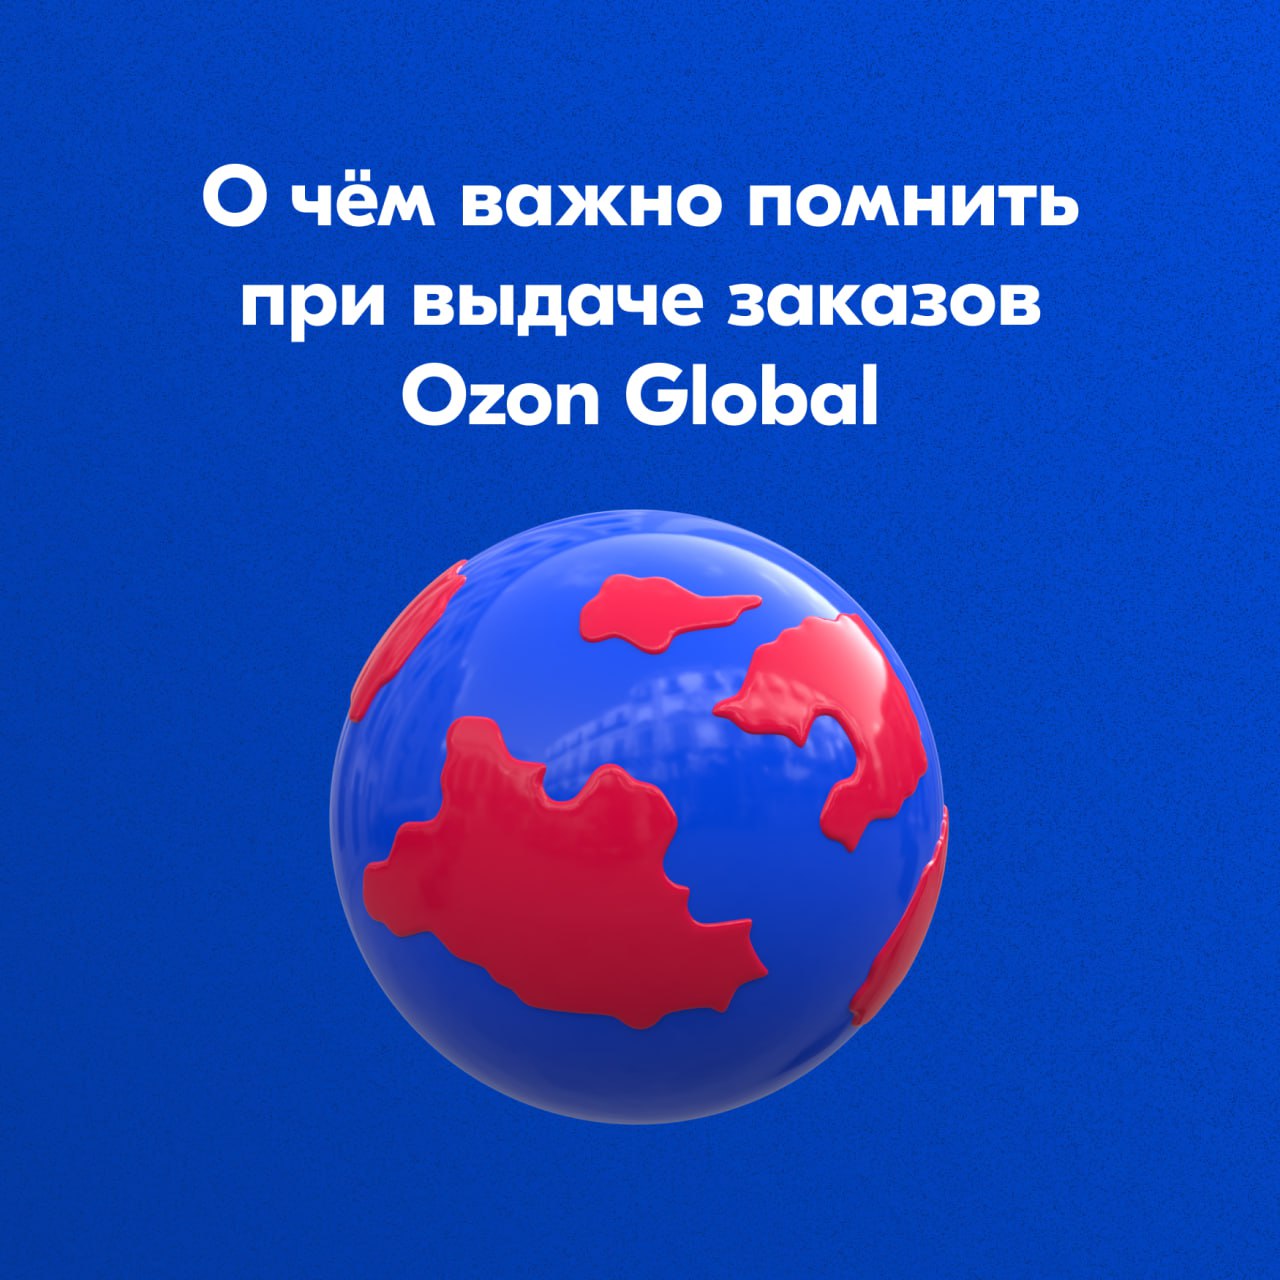 Озон Глобал. Azon Global kartinka. Доставка OZON Global. Озон Learning. Ozone global